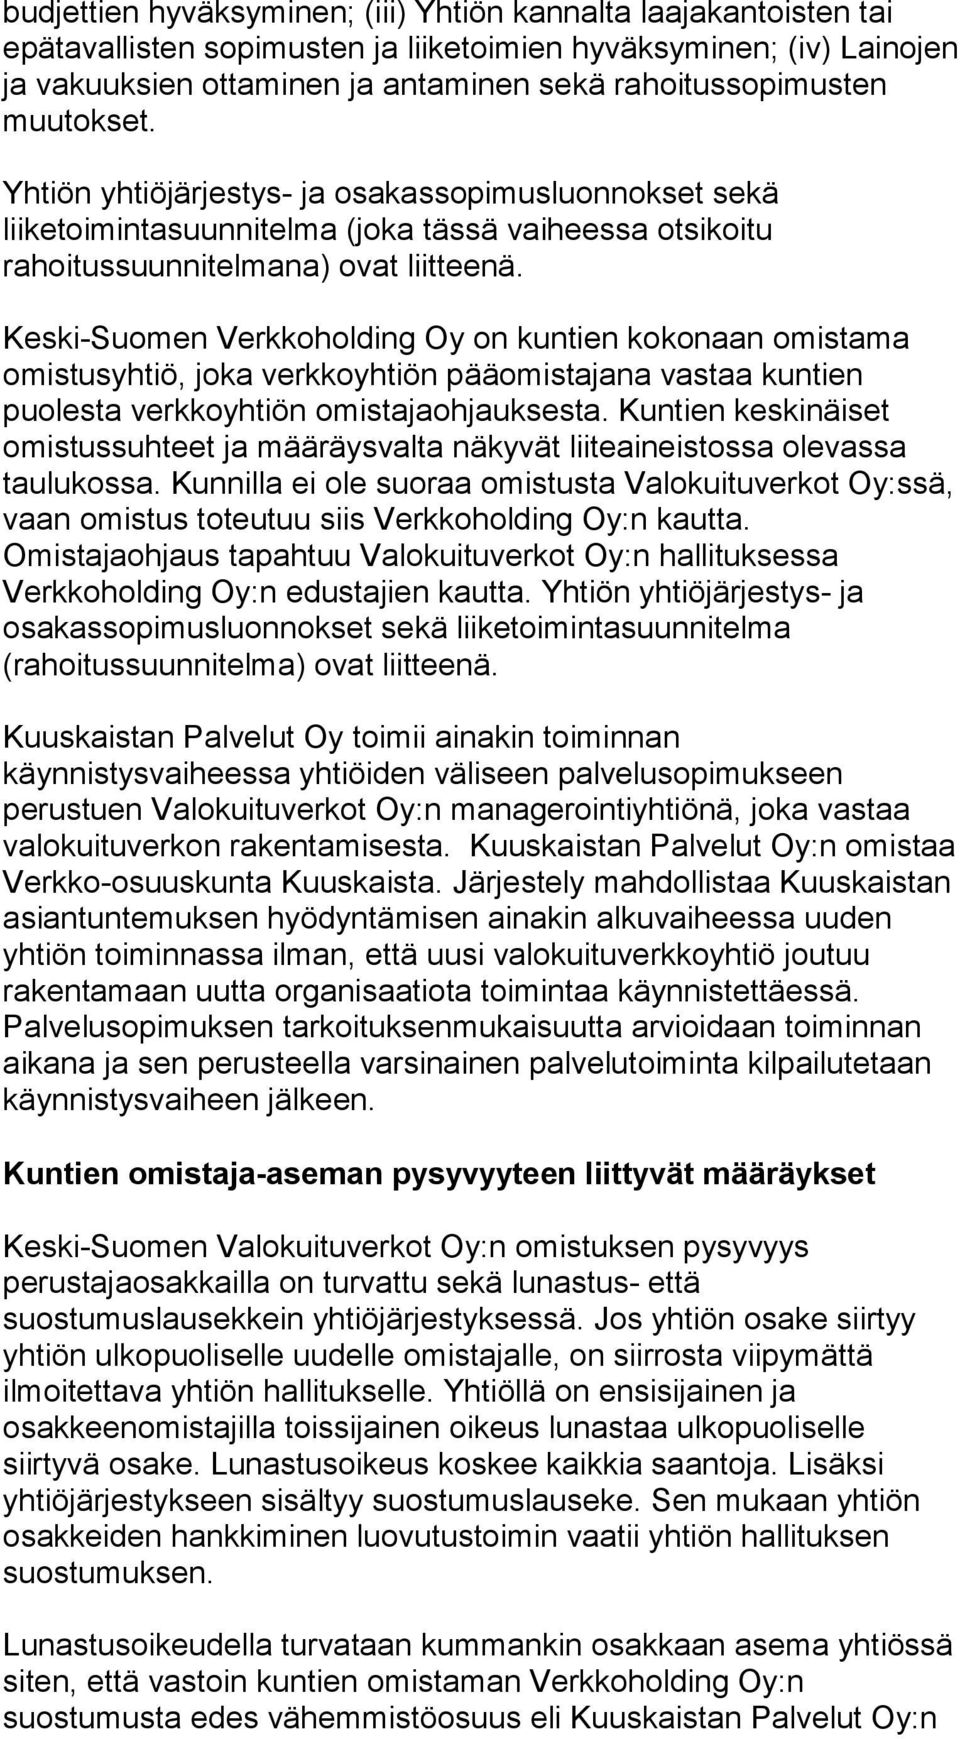 Keski-Suomen Verkkoholding Oy on kuntien kokonaan omistama omistusyhtiö, joka verkkoyhtiön pääomistajana vastaa kuntien puolesta verkkoyhtiön omistajaohjauksesta.